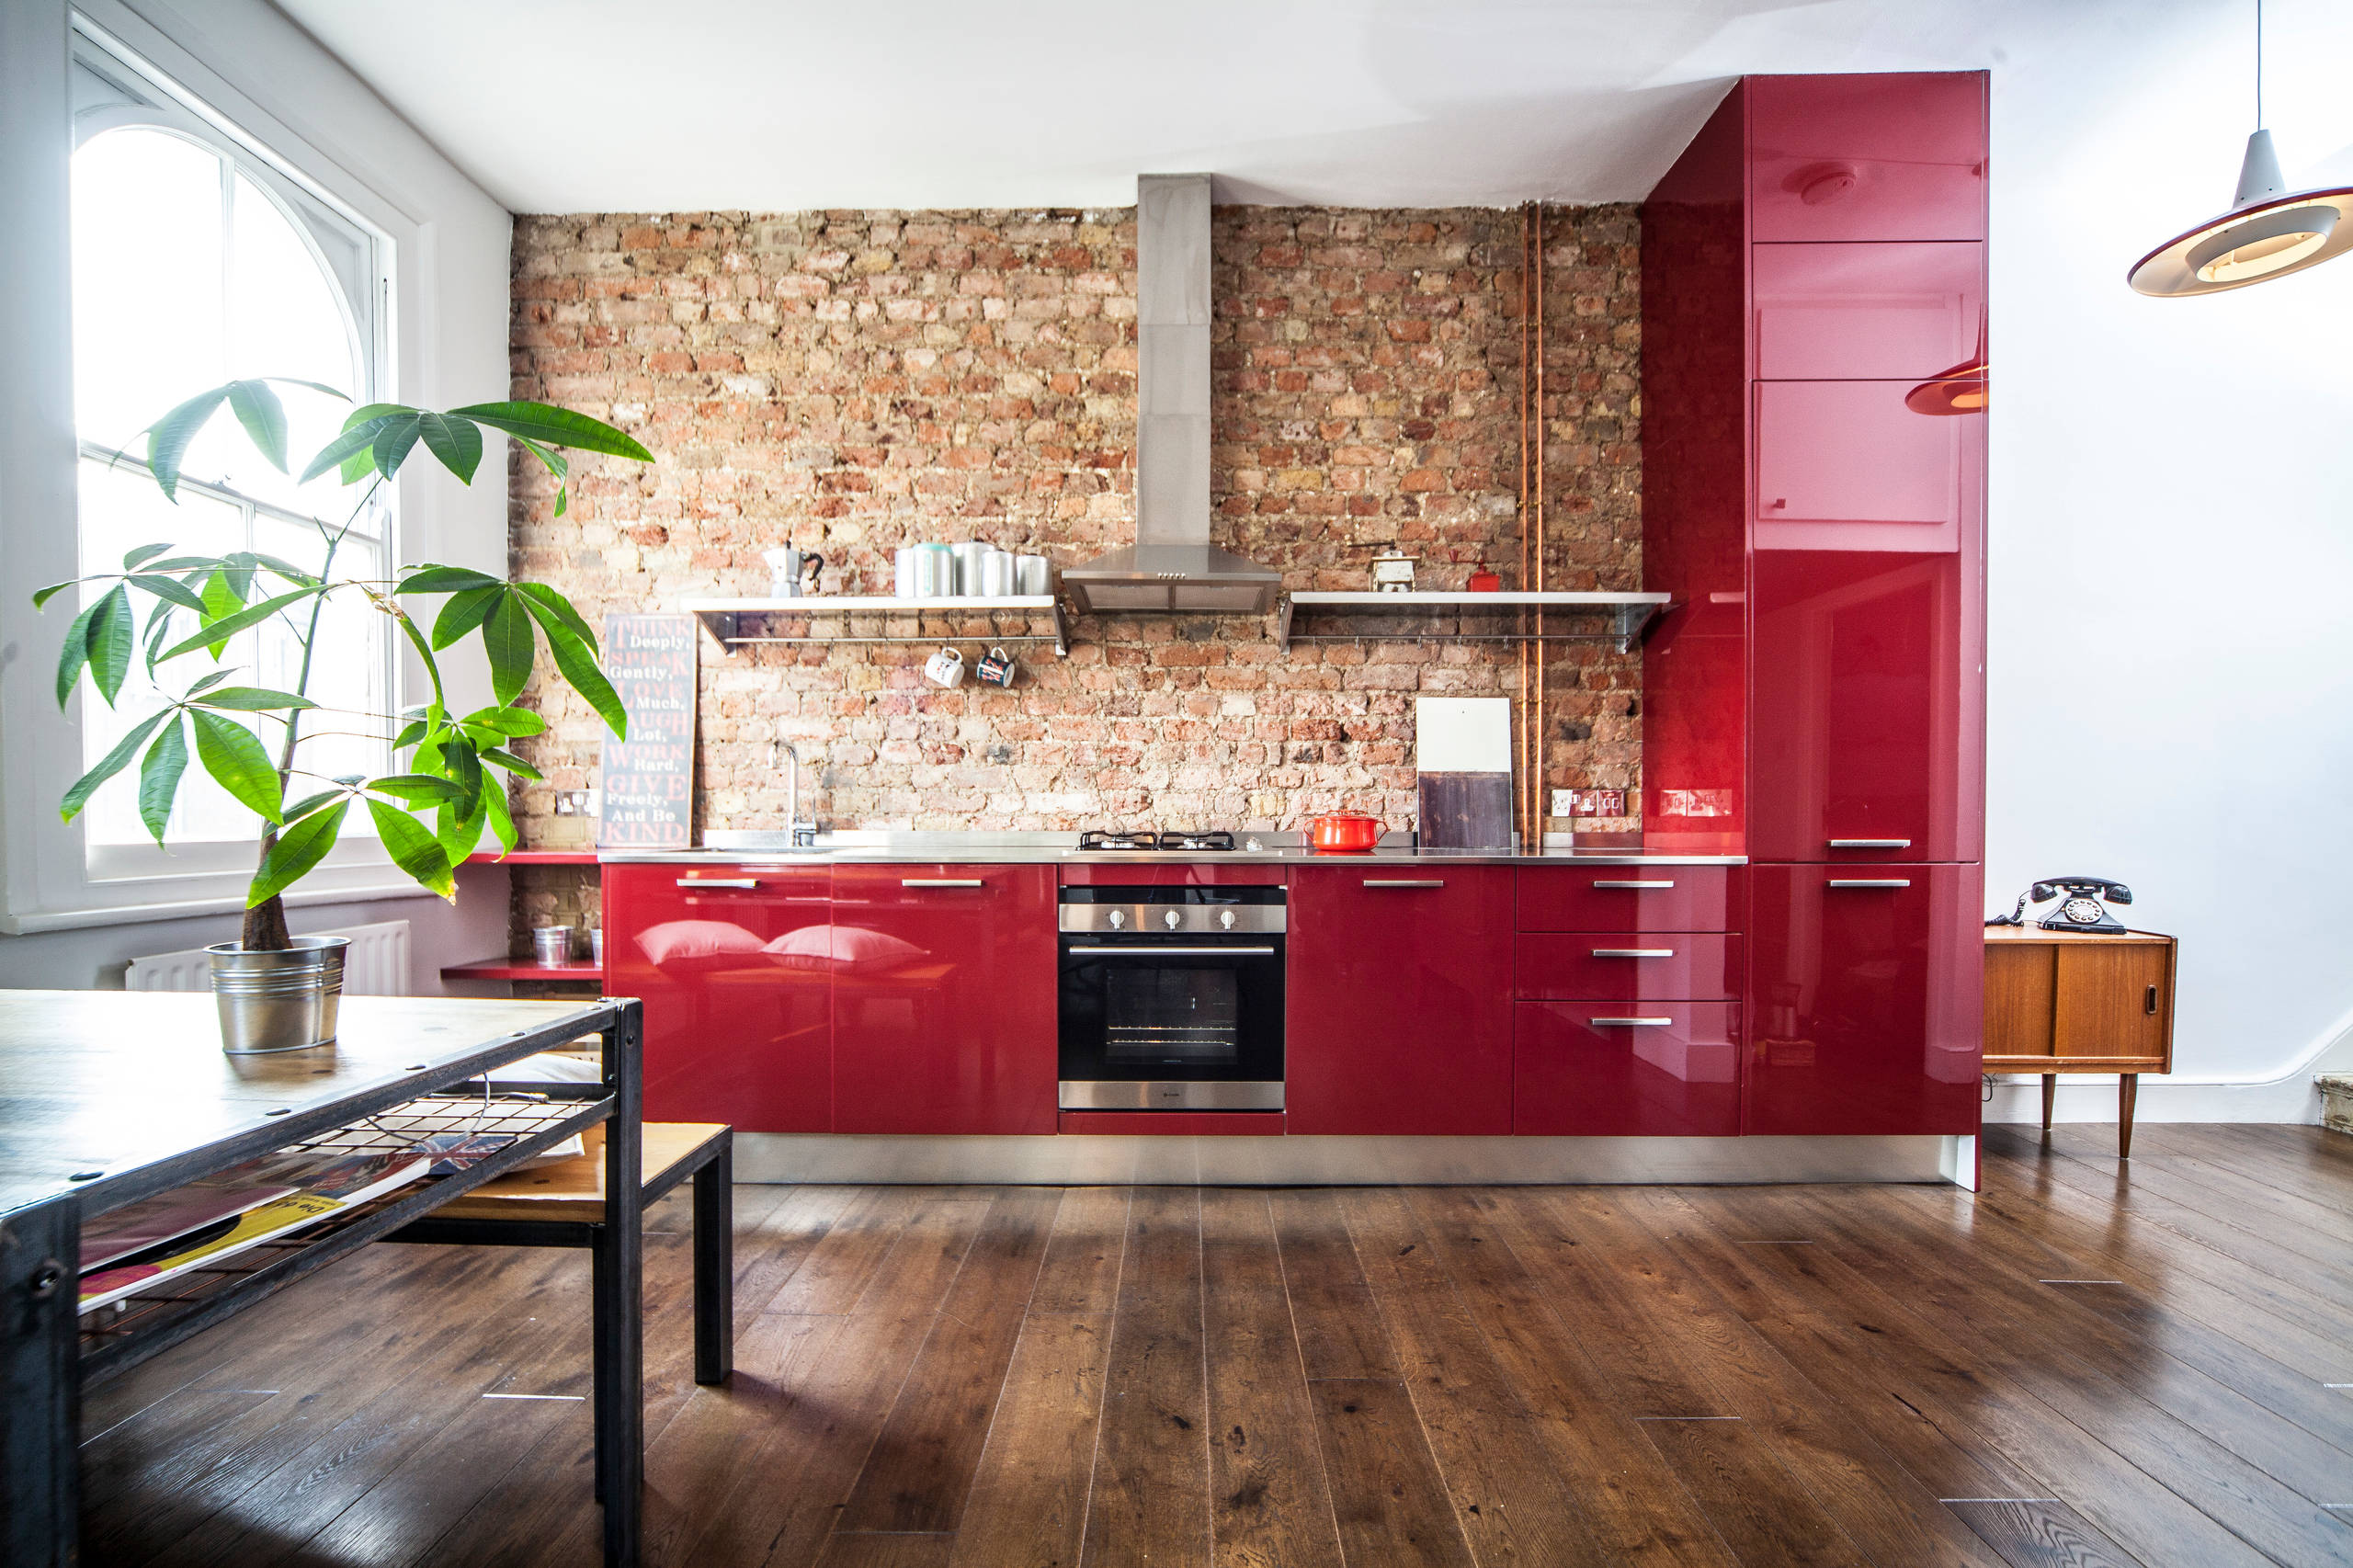 Red Kitchen Design Ideas